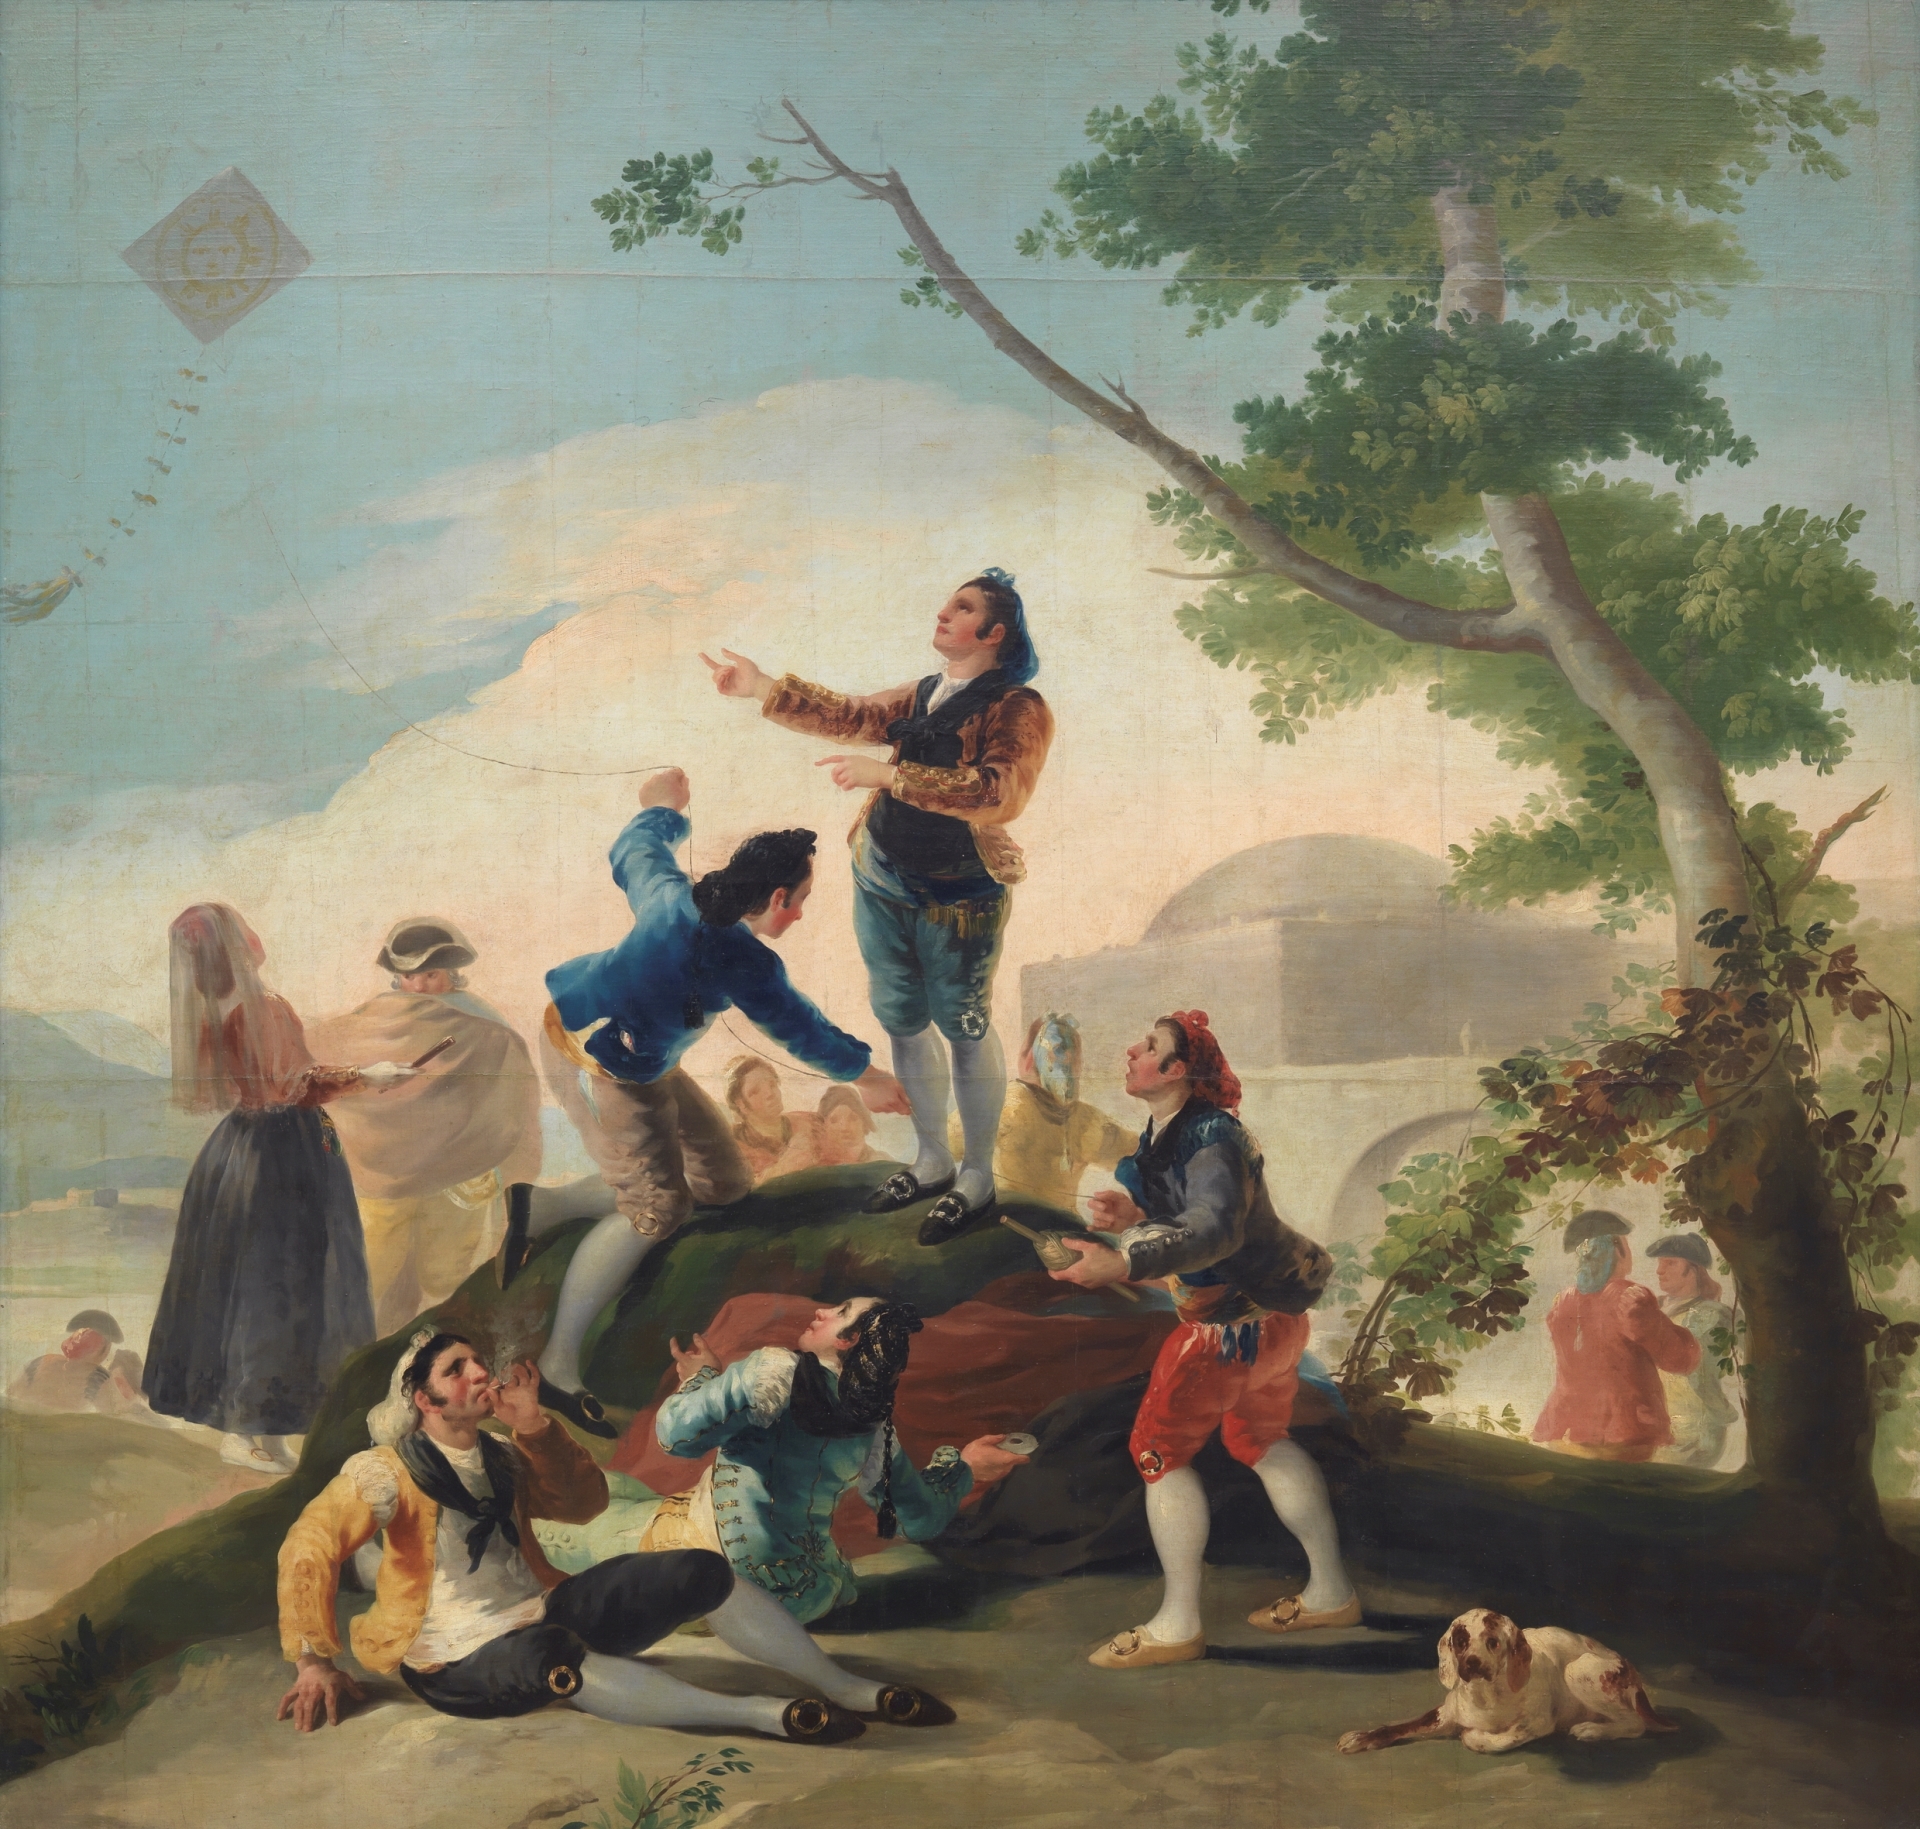 Der Drachen by Francisco Goya - 1777-1778 - 269 x 285 cm Museo del Prado